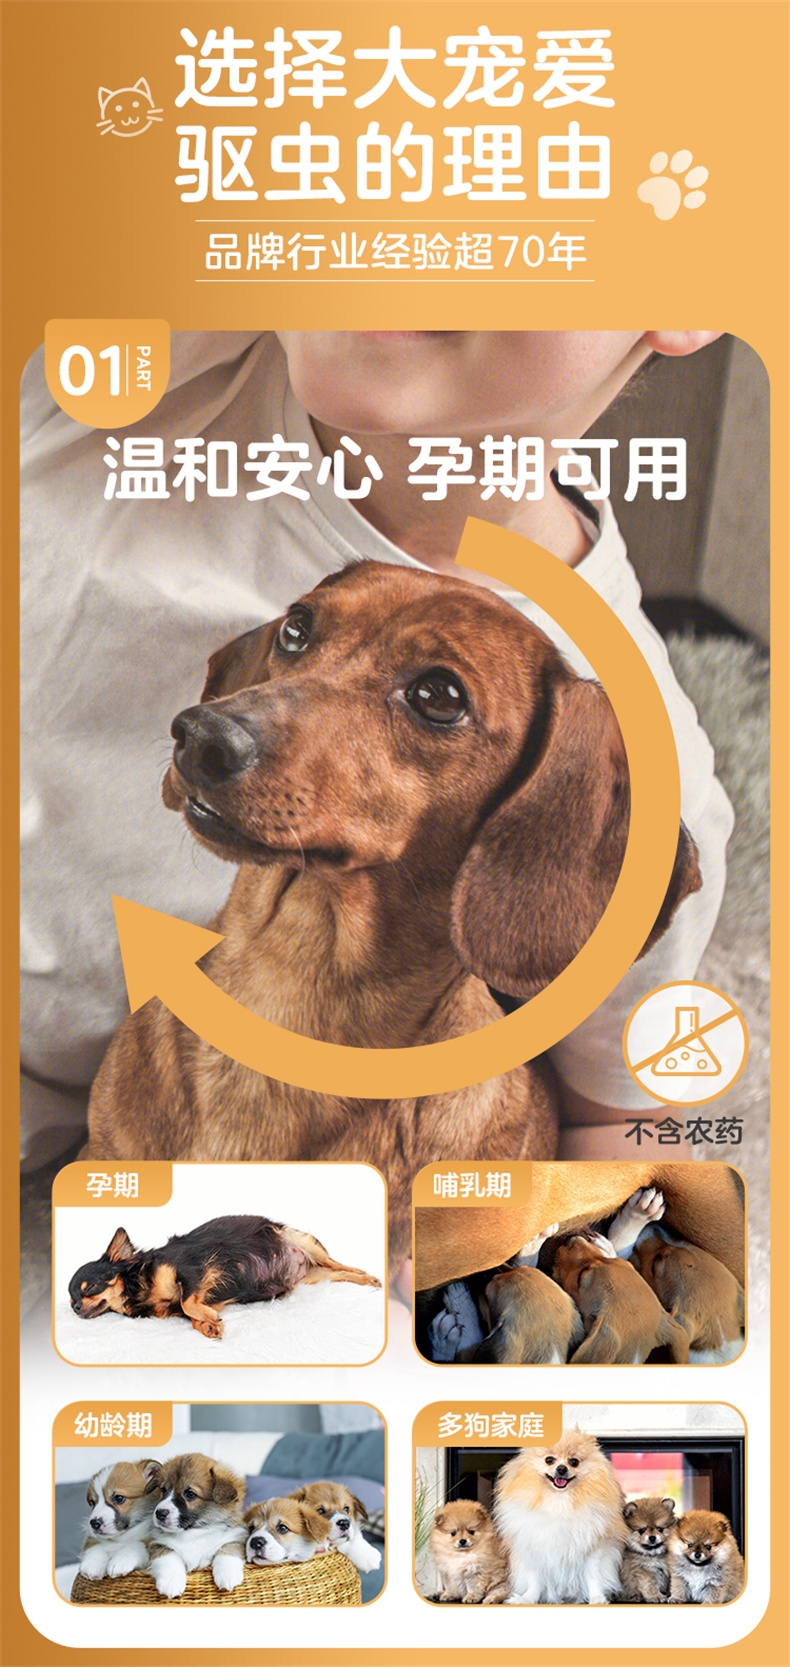 大宠爱 狗用内外同驱 驱虫滴剂 5.1-10kg犬适用 60mg*3支盒装/3个月剂量  美国进口